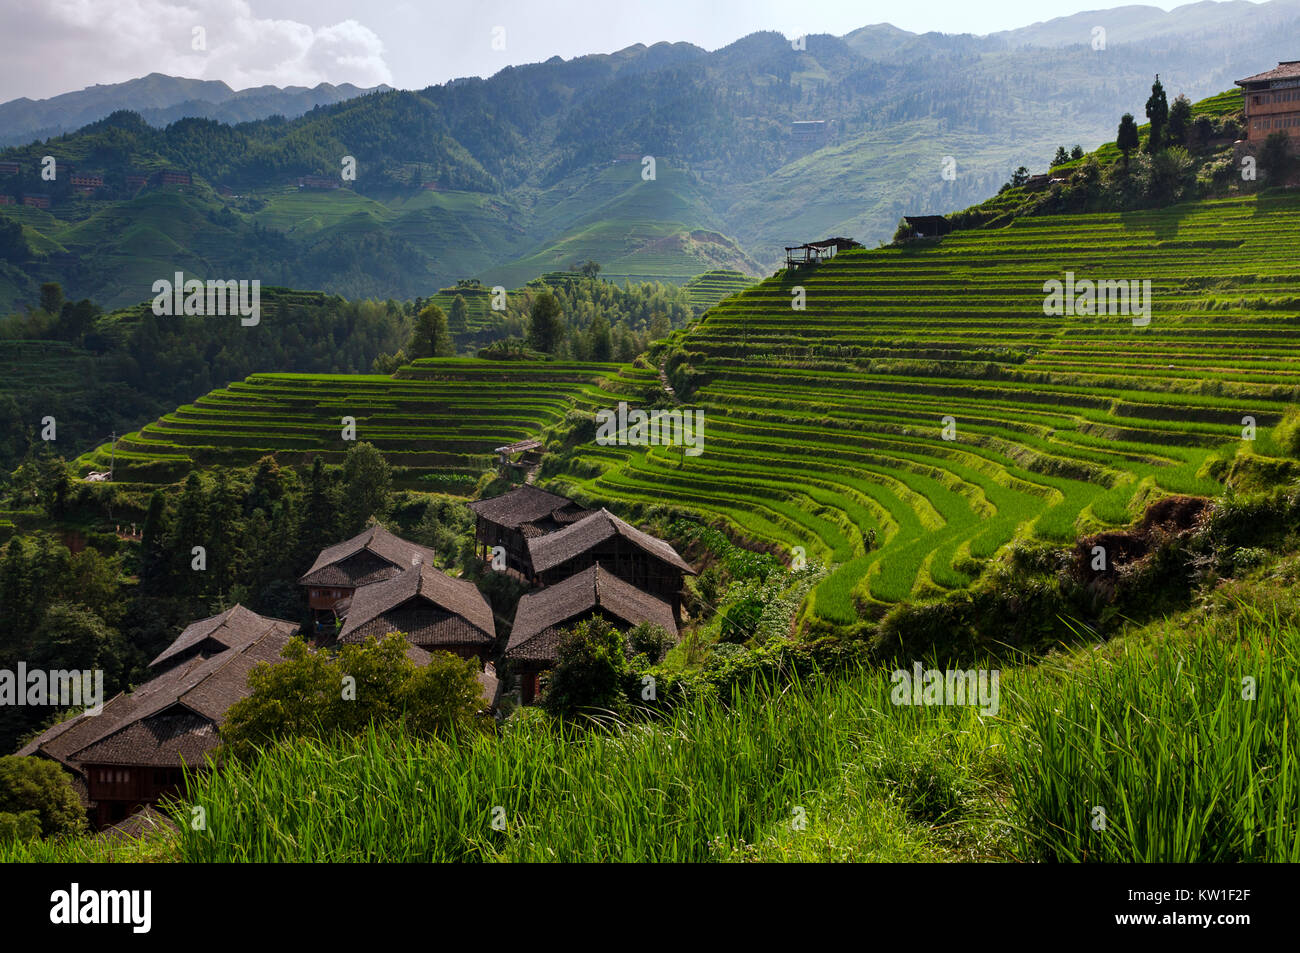 Bella vista Longsheng terrazze di riso nei pressi del villaggio di Dazhai nella provincia del Guangxi, Cina; Concetto per i viaggi in Cina Foto Stock